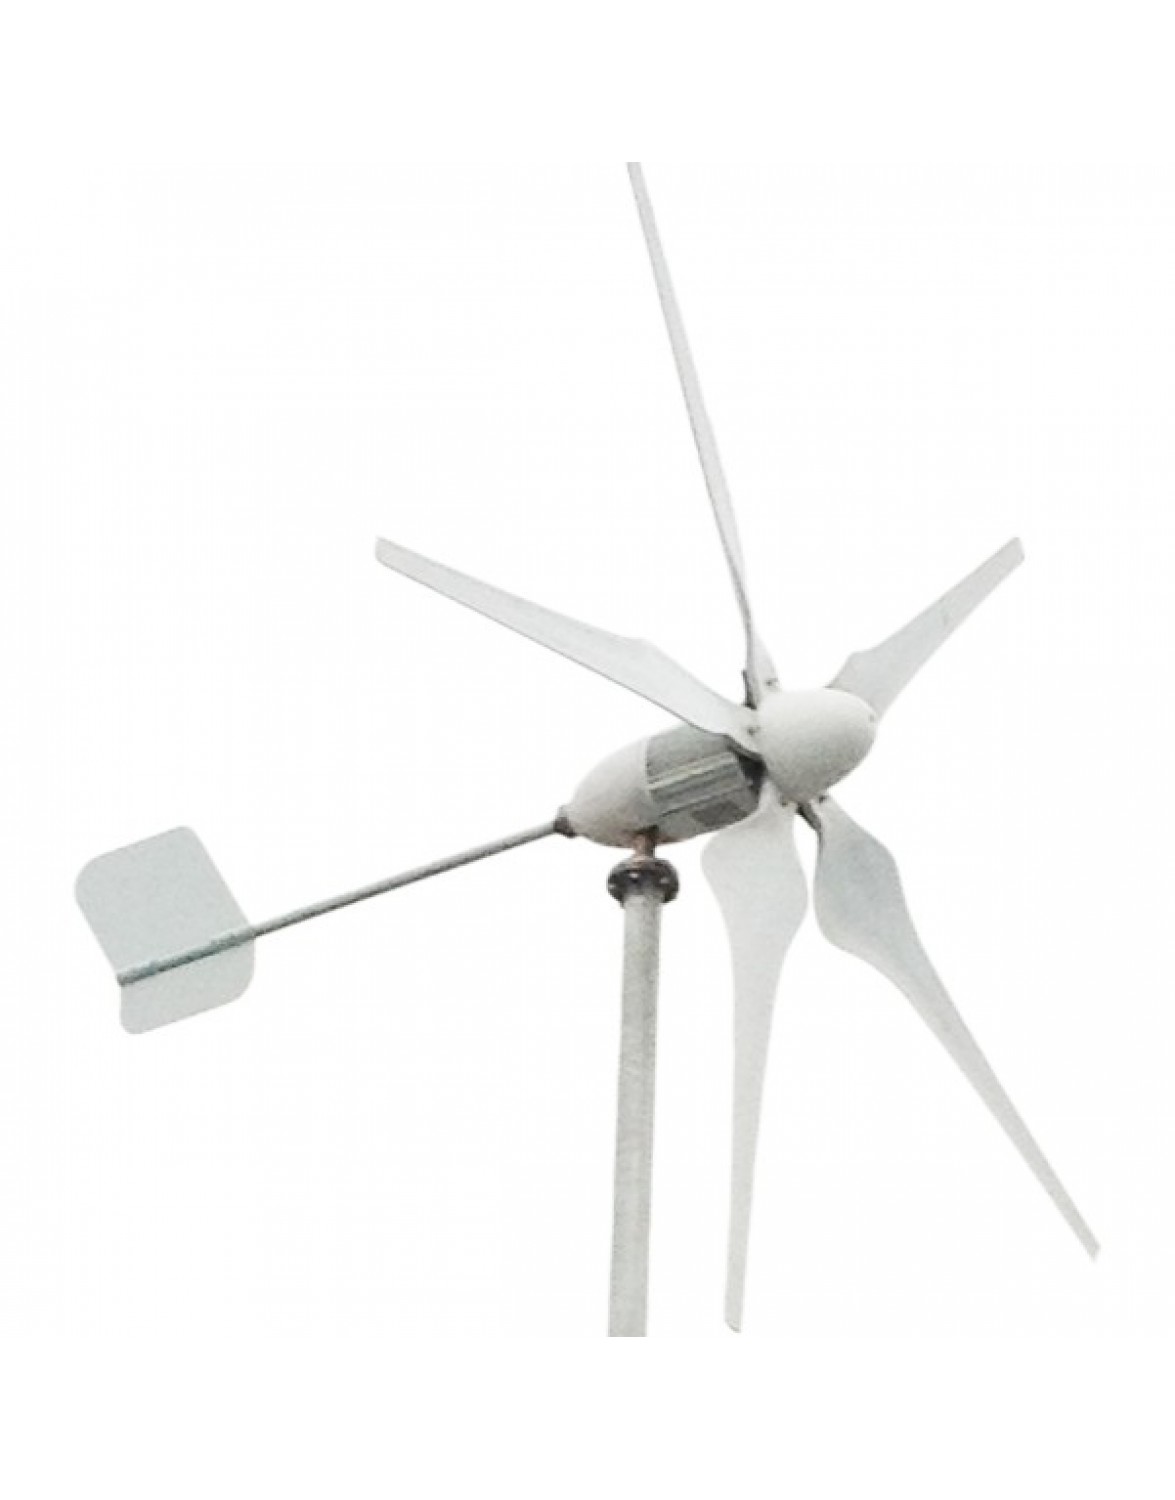 Вітрогенератор EW-series 1 kW 5 лопастей